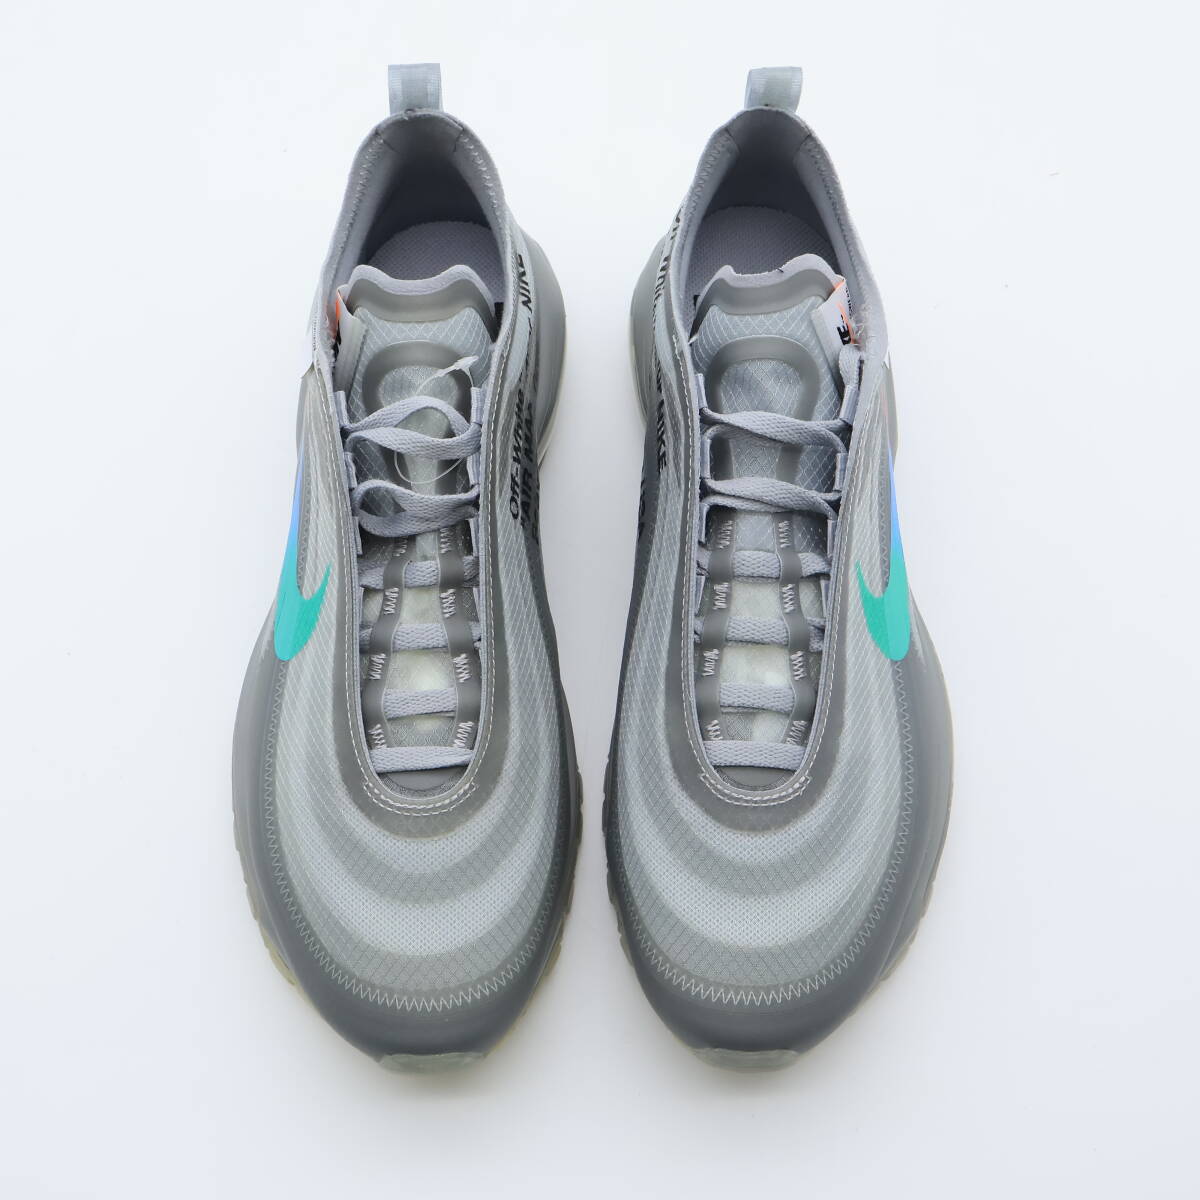 【新品未使用】Off-White Nike Air Max 97 Grey オフホワイト ナイキ エアマックス97 グレー AJ4585-101  25.5cm